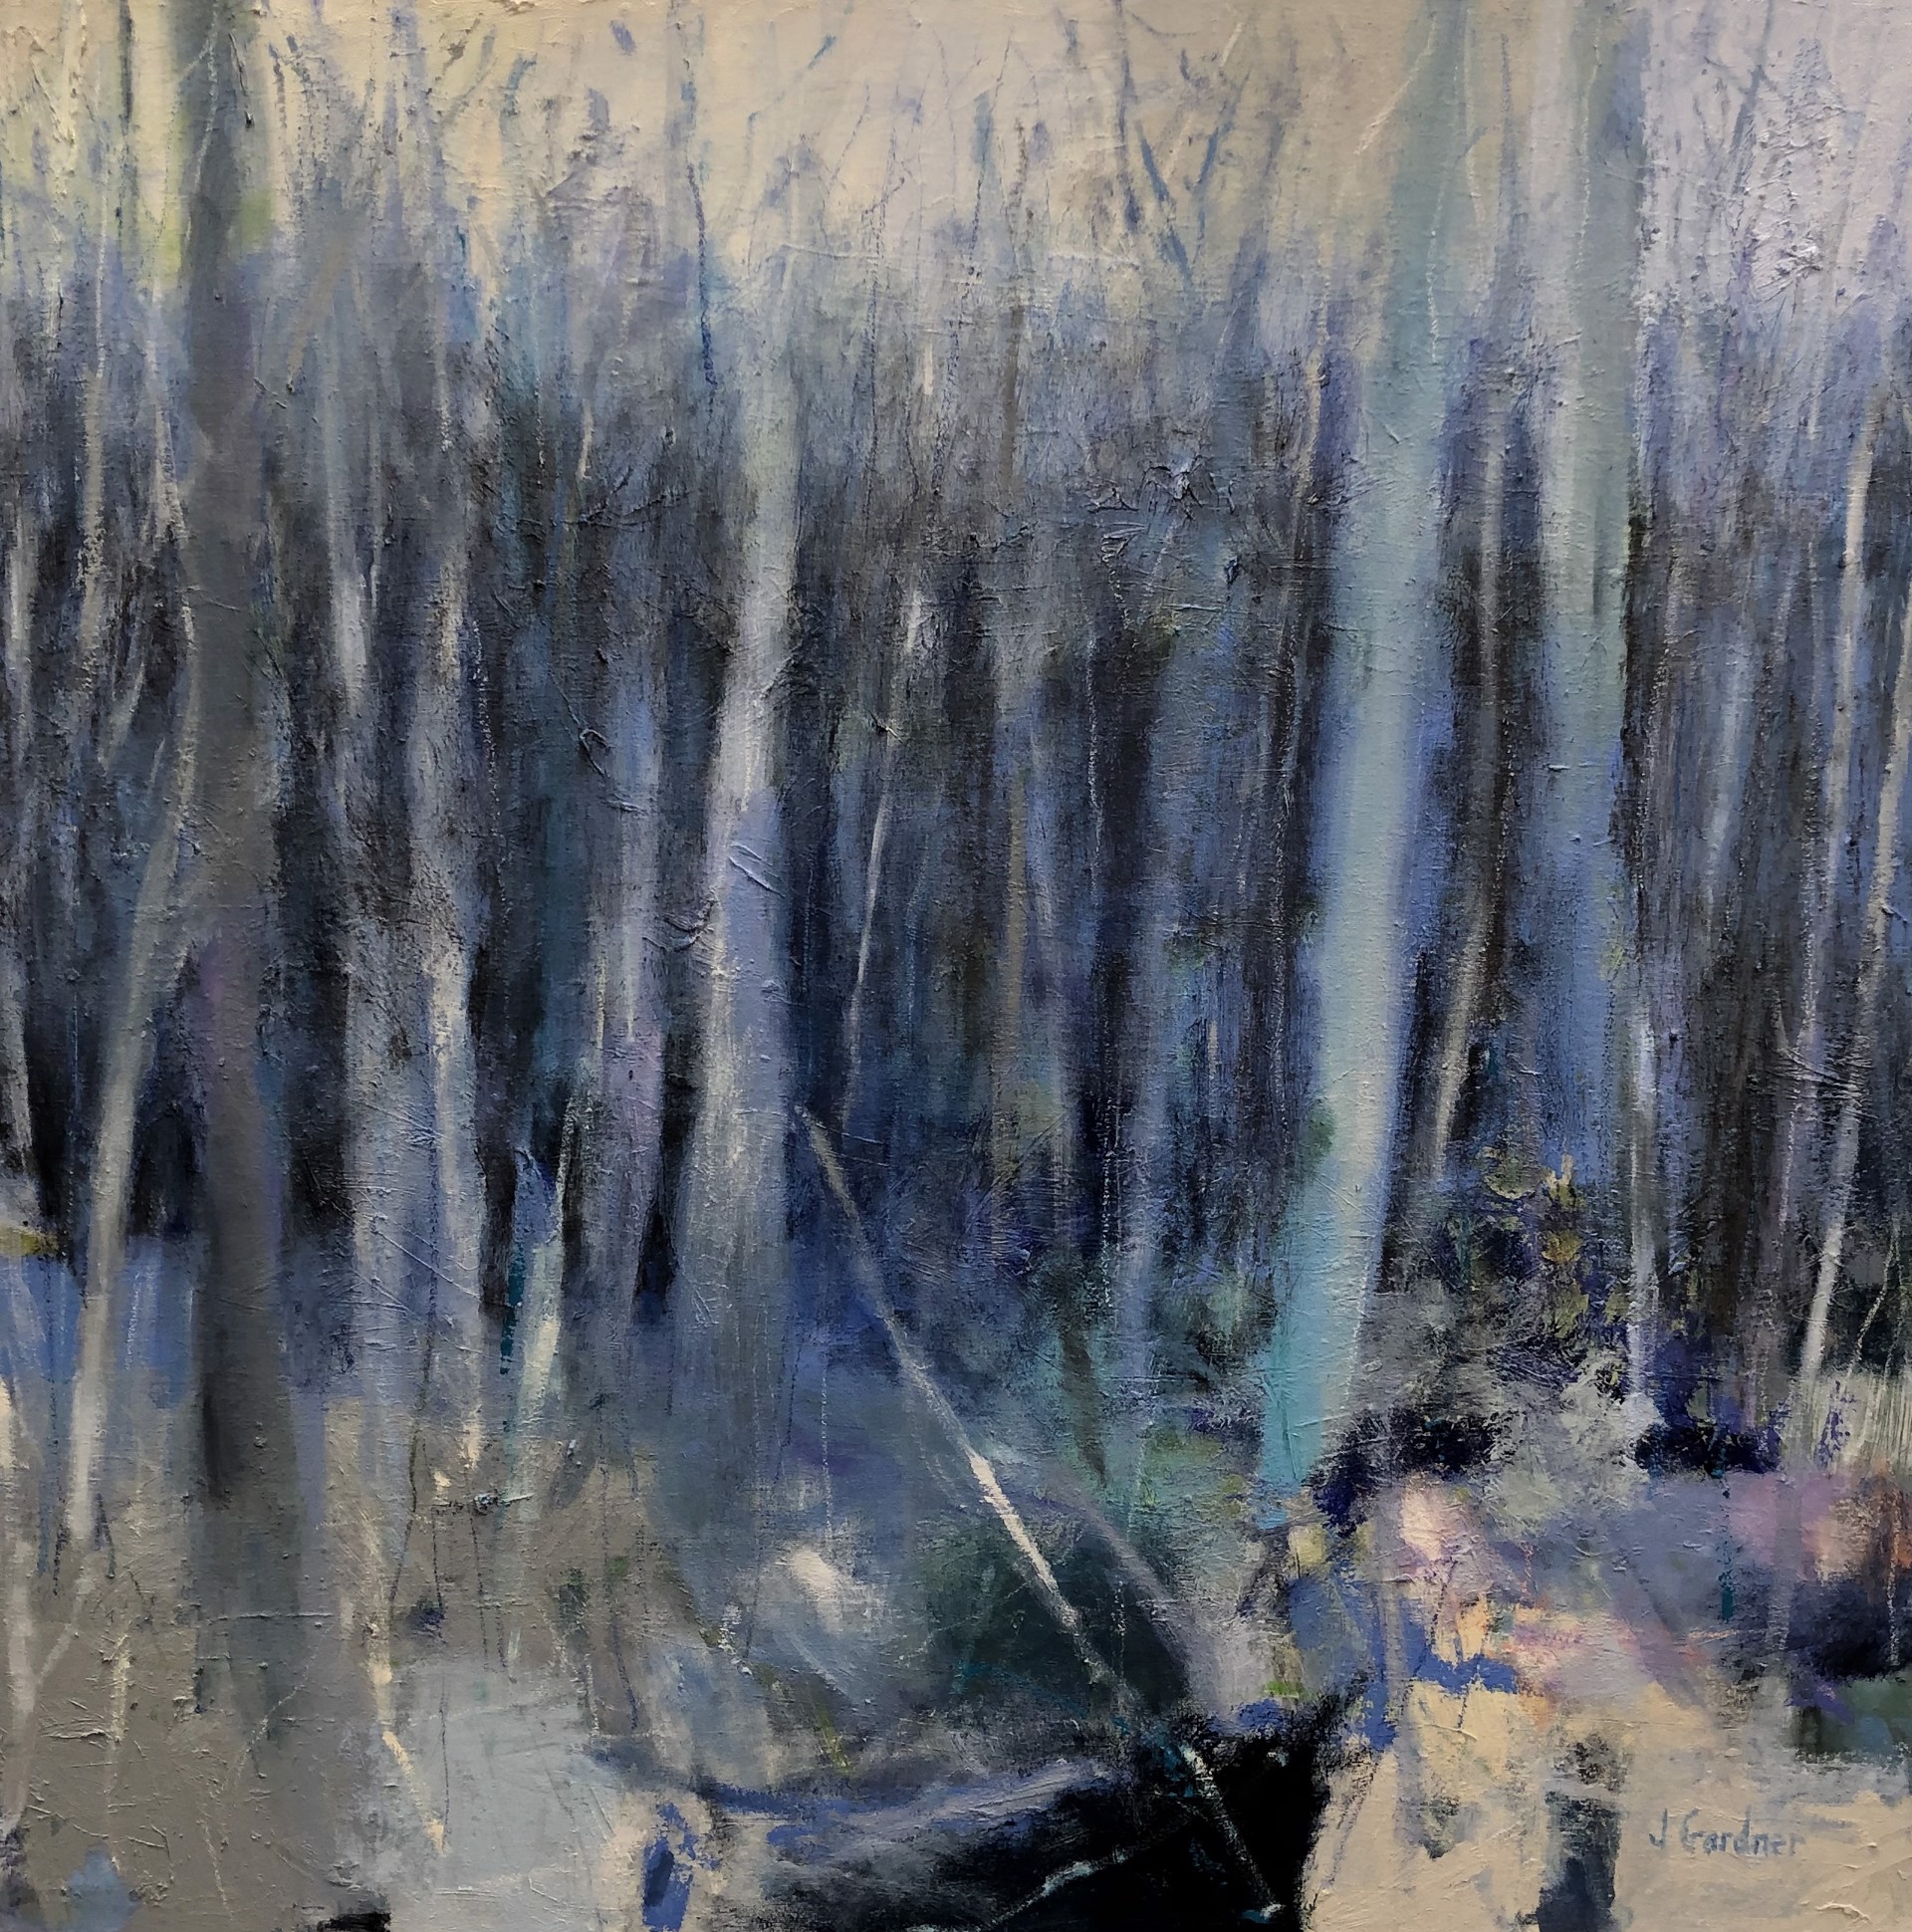 Deep Woods by Joy Gardner